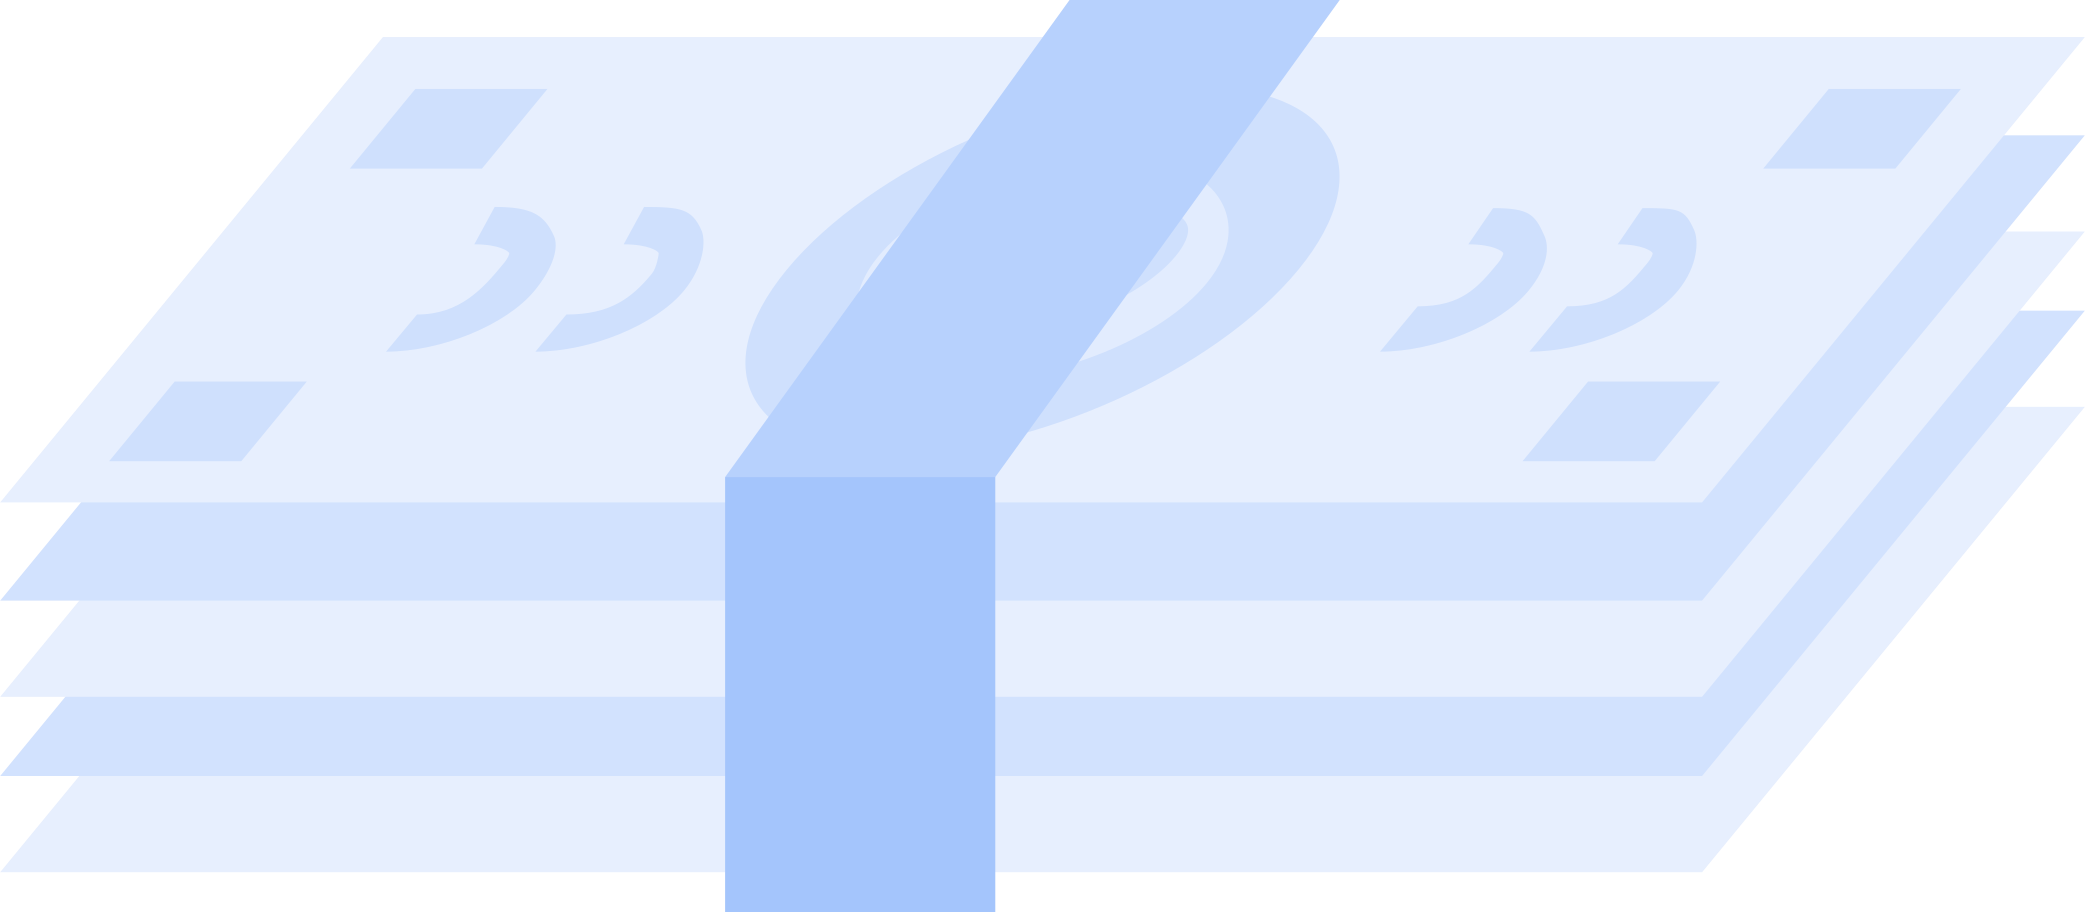 banknotes Illustration in PNG, SVG